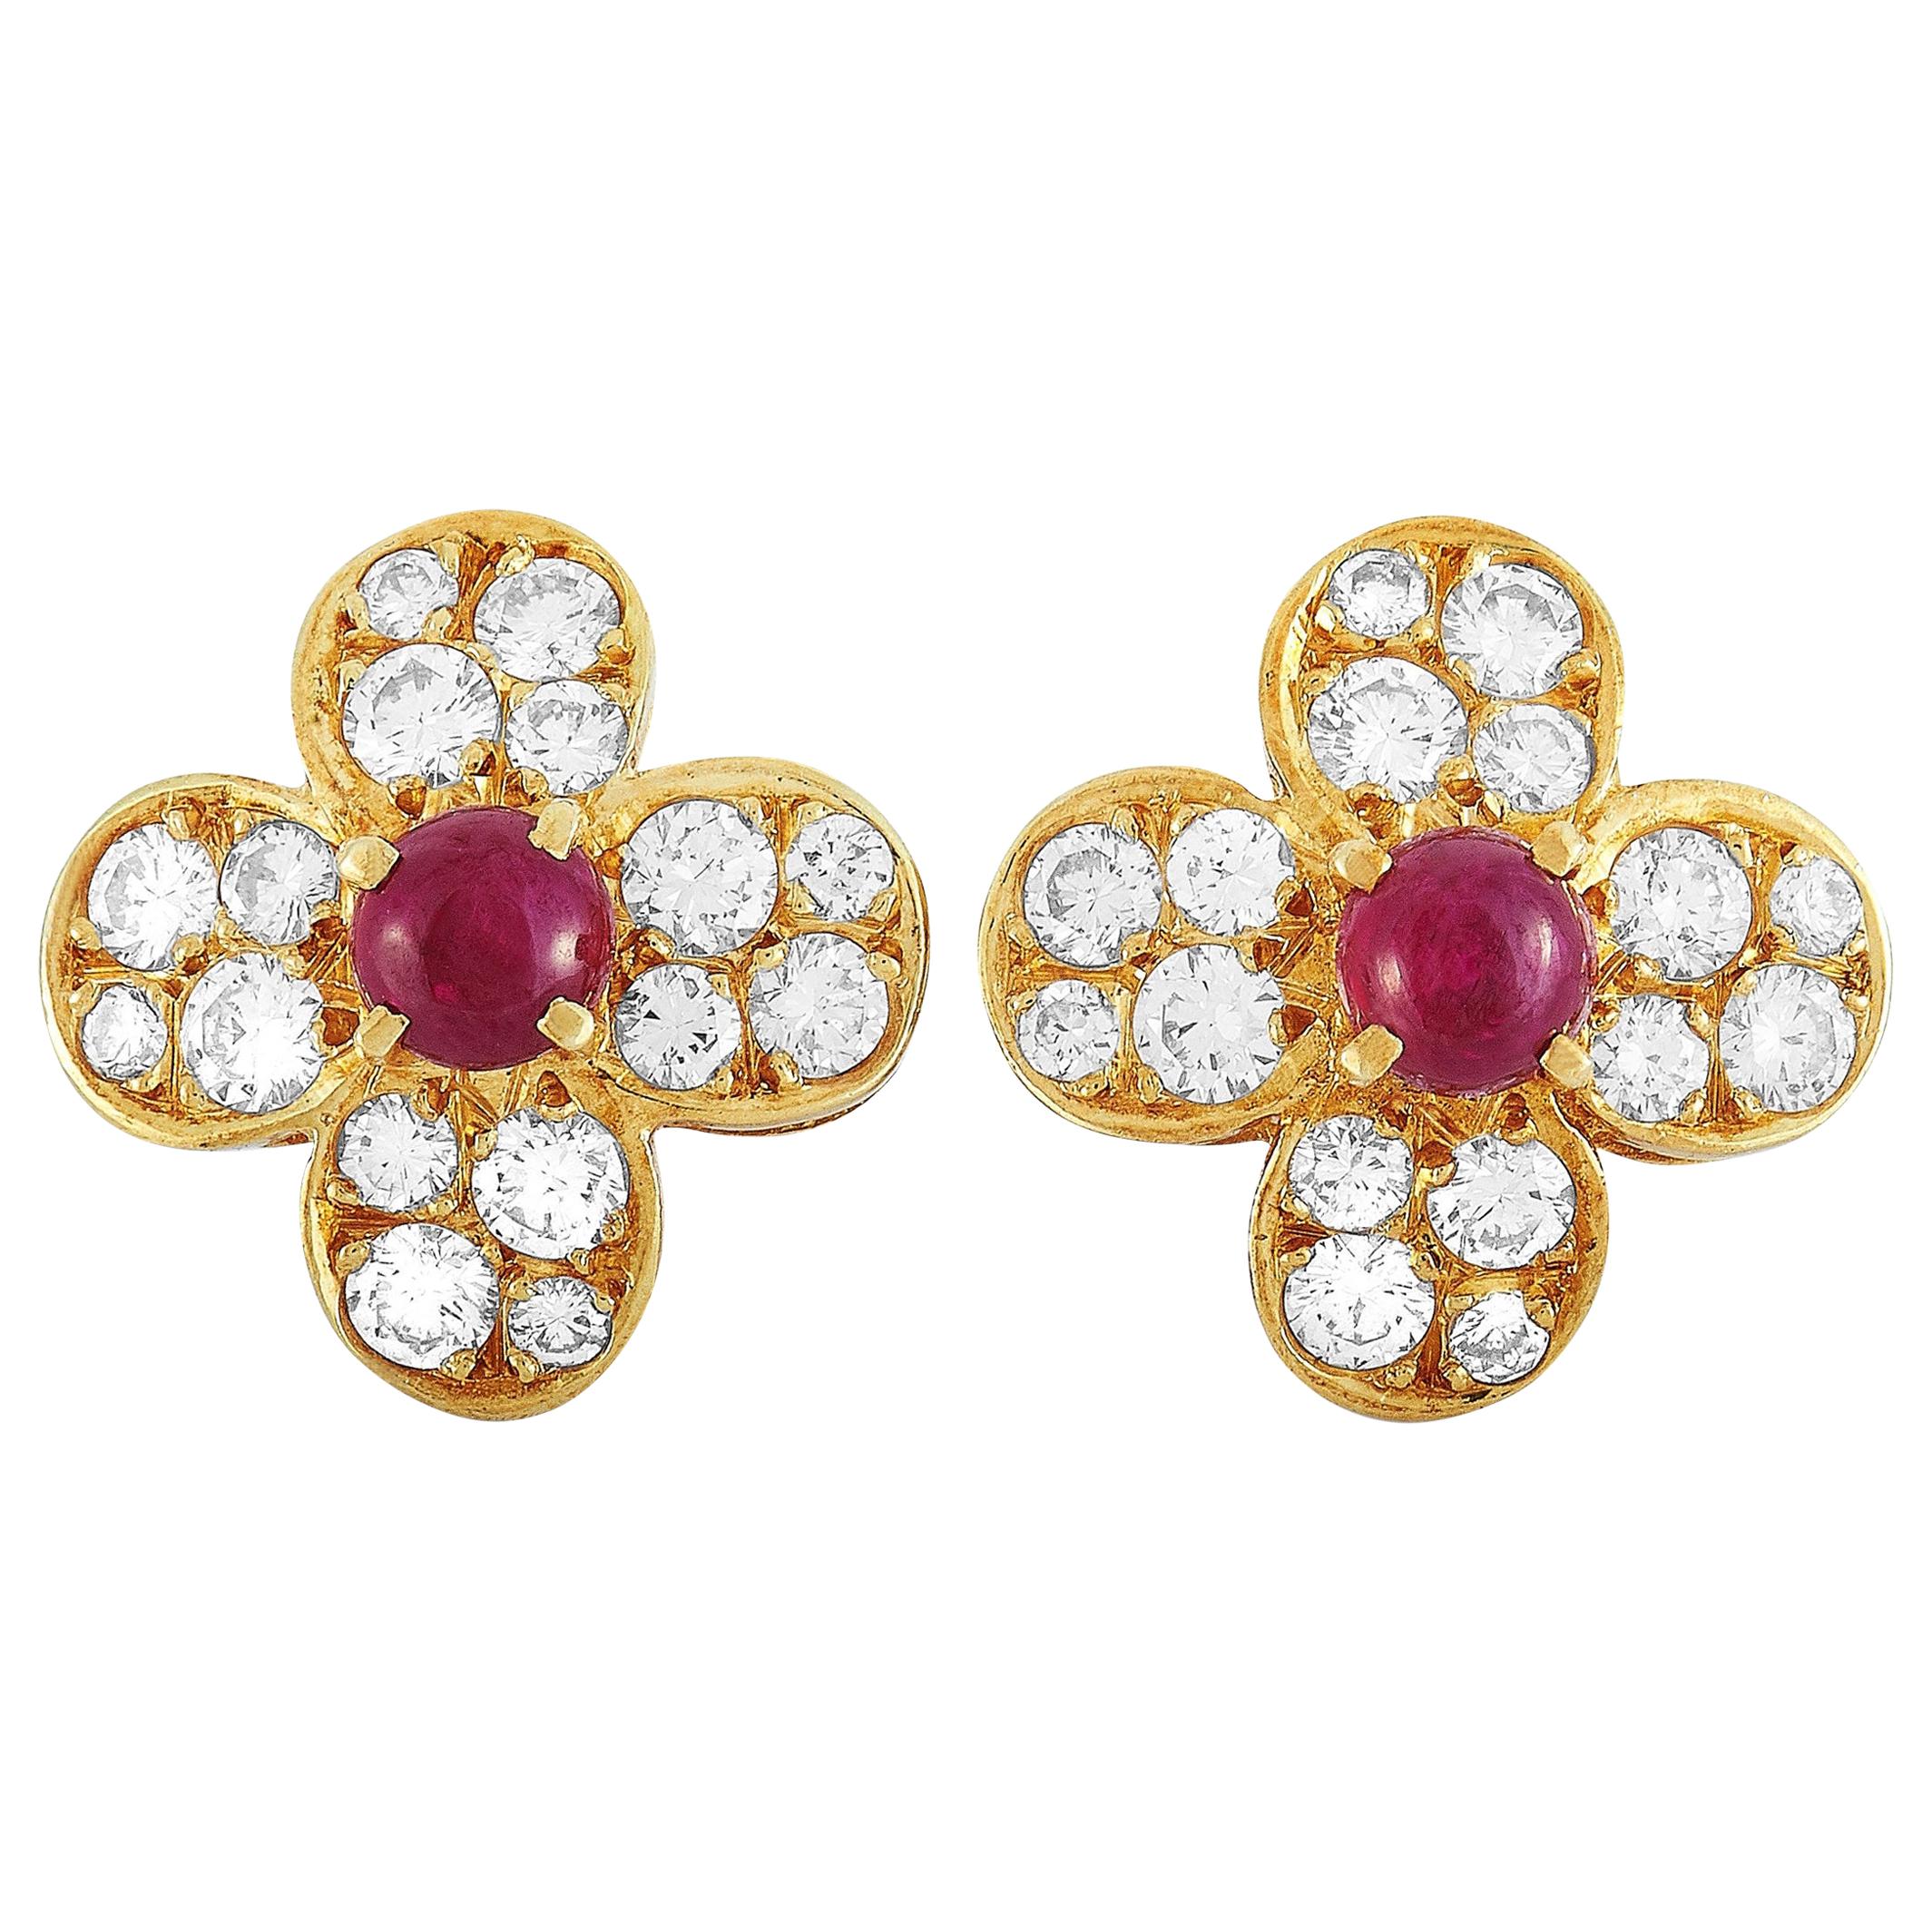 Van Cleef & Arpels Trefle 18 Karat Gold 0.82 Carat Diamond and Ruby Earrings